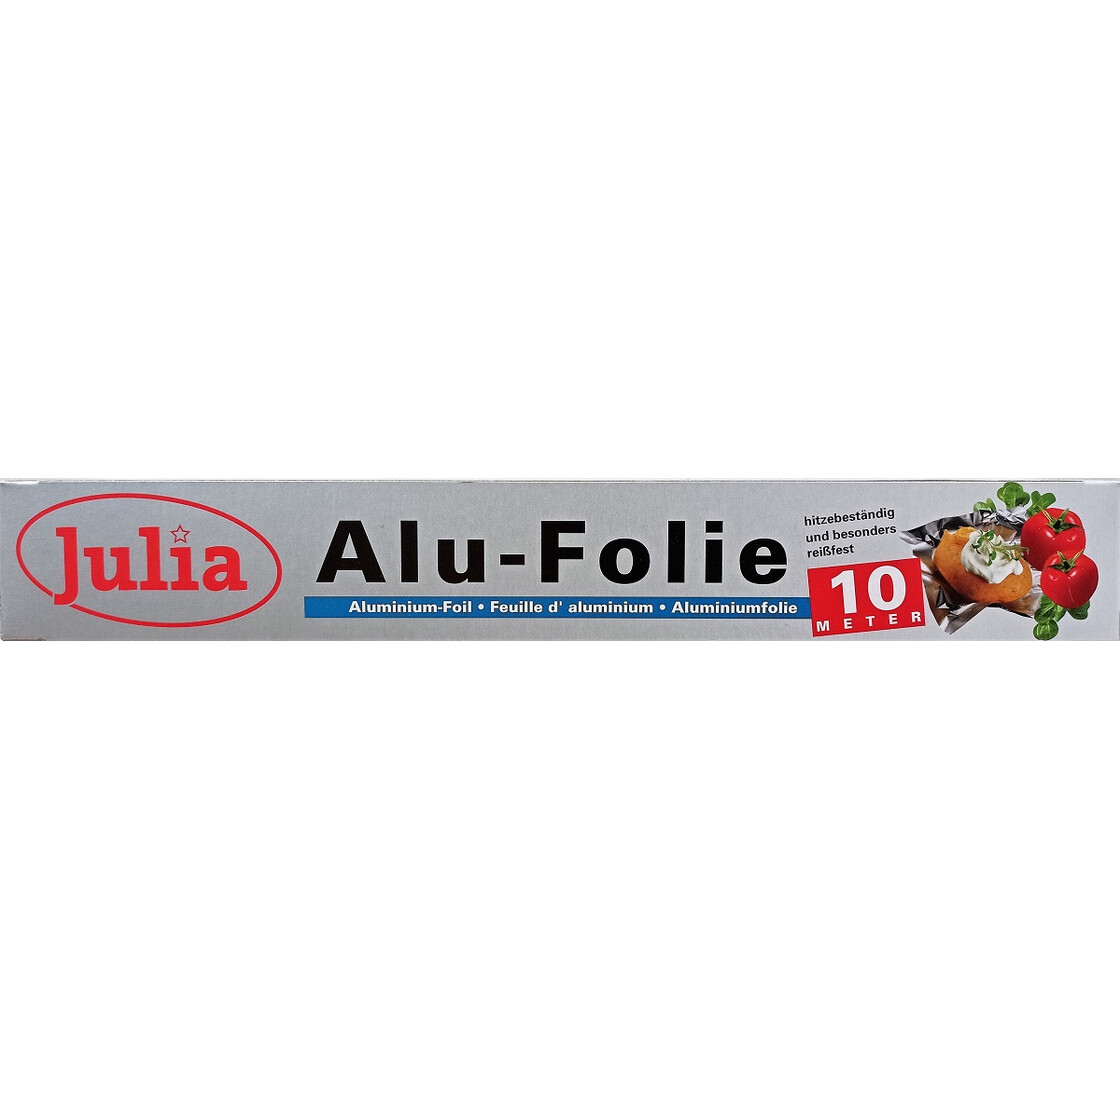 https://www.abereda.de/media/image/product/73496/lg/julia-alu-folie-hitzebestaendige-und-reissfeste-aluminiumfolie-10m-x-29cm.jpg